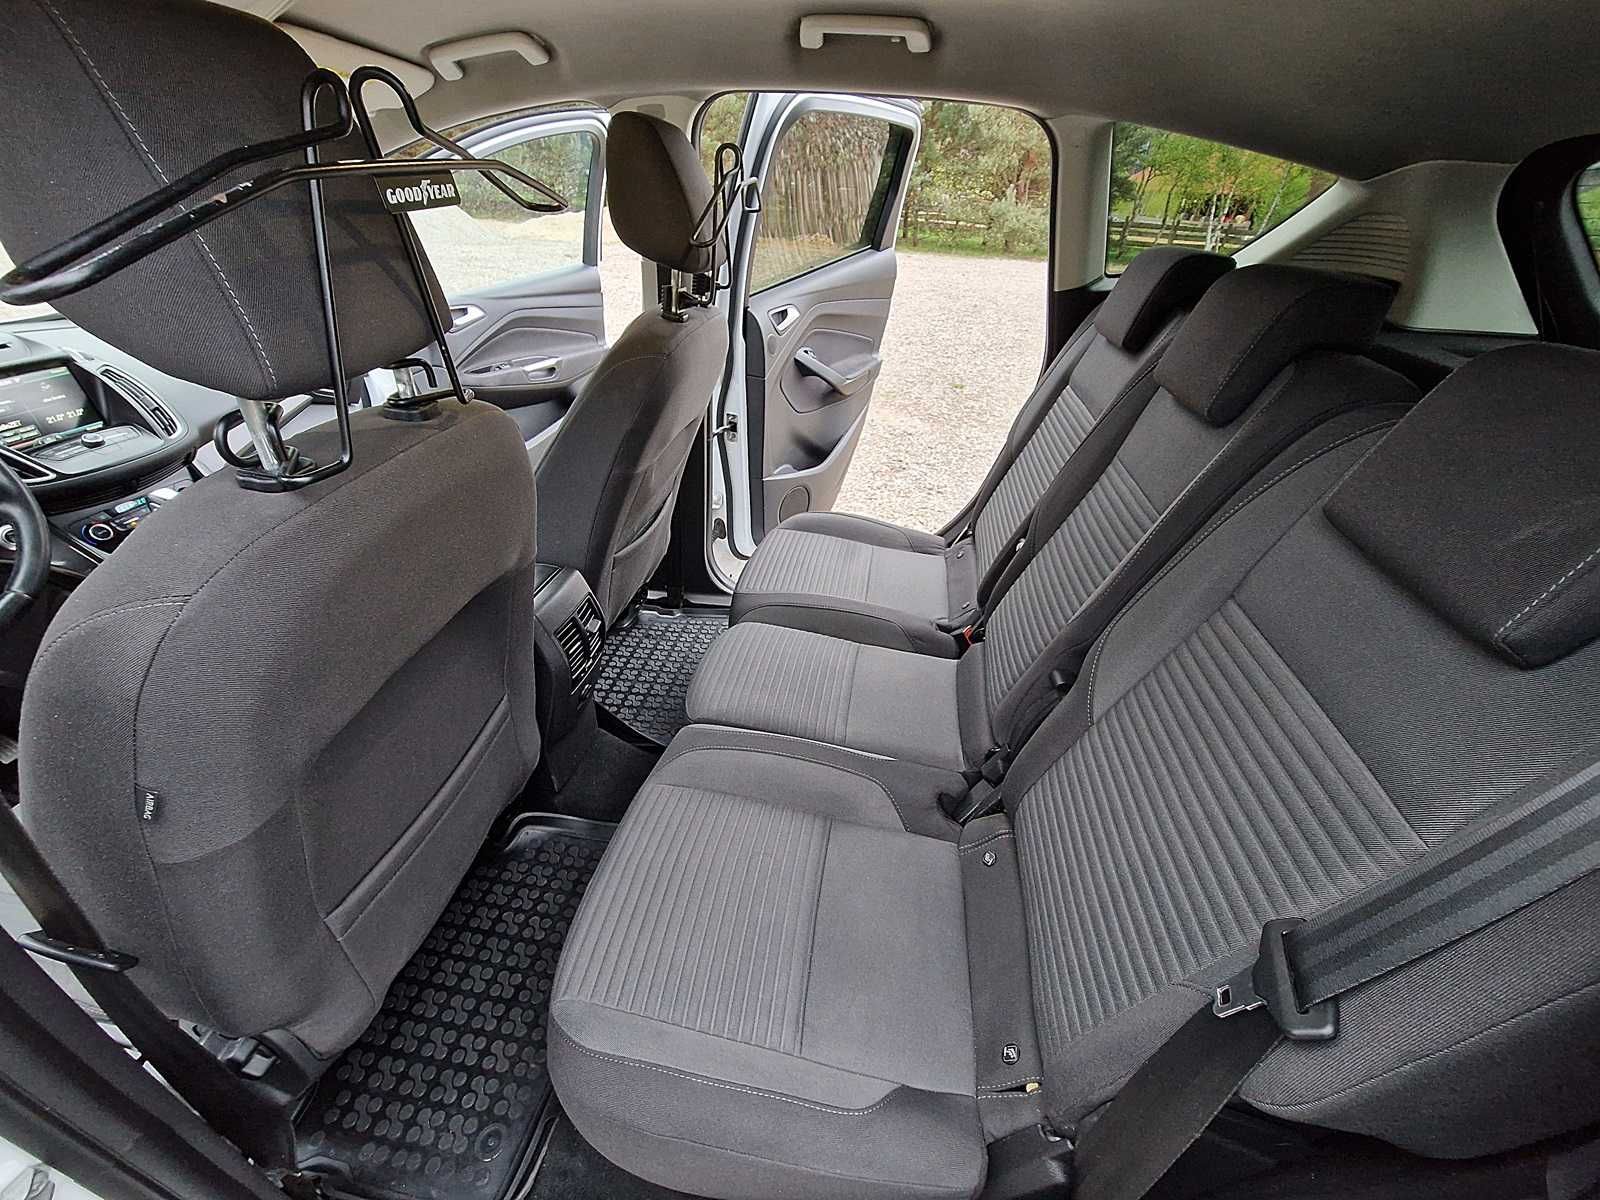 Ford C-Max 2015 2.0 150km wersja titanium model 2016